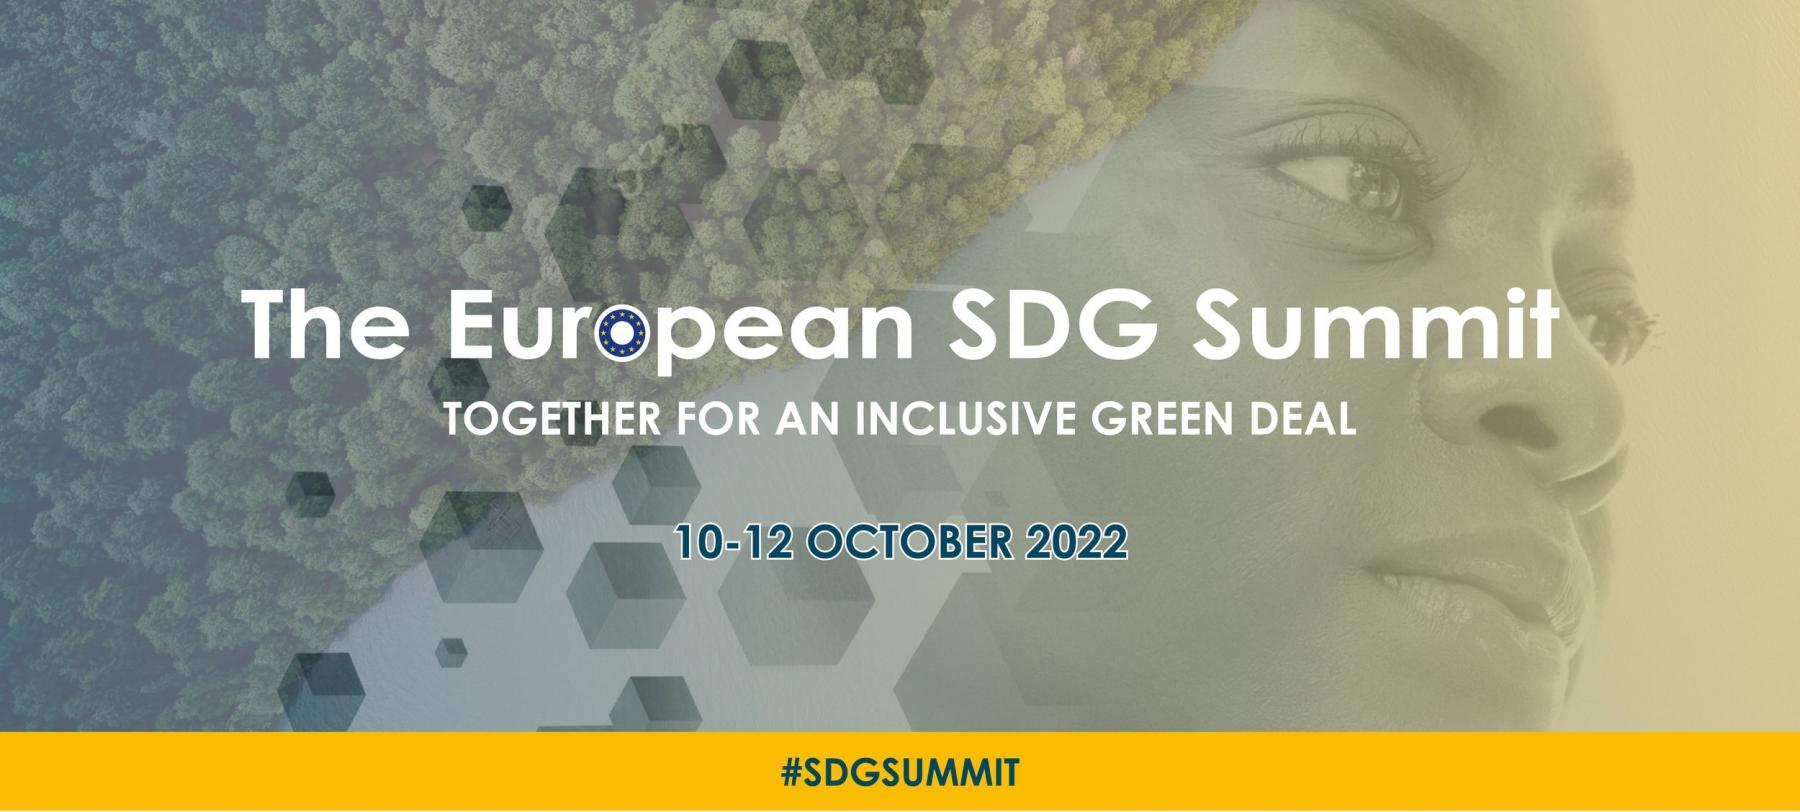 Připojte se k Evropskému summitu SDG 2022 – Společně za inkluzivní Zelenou dohodou